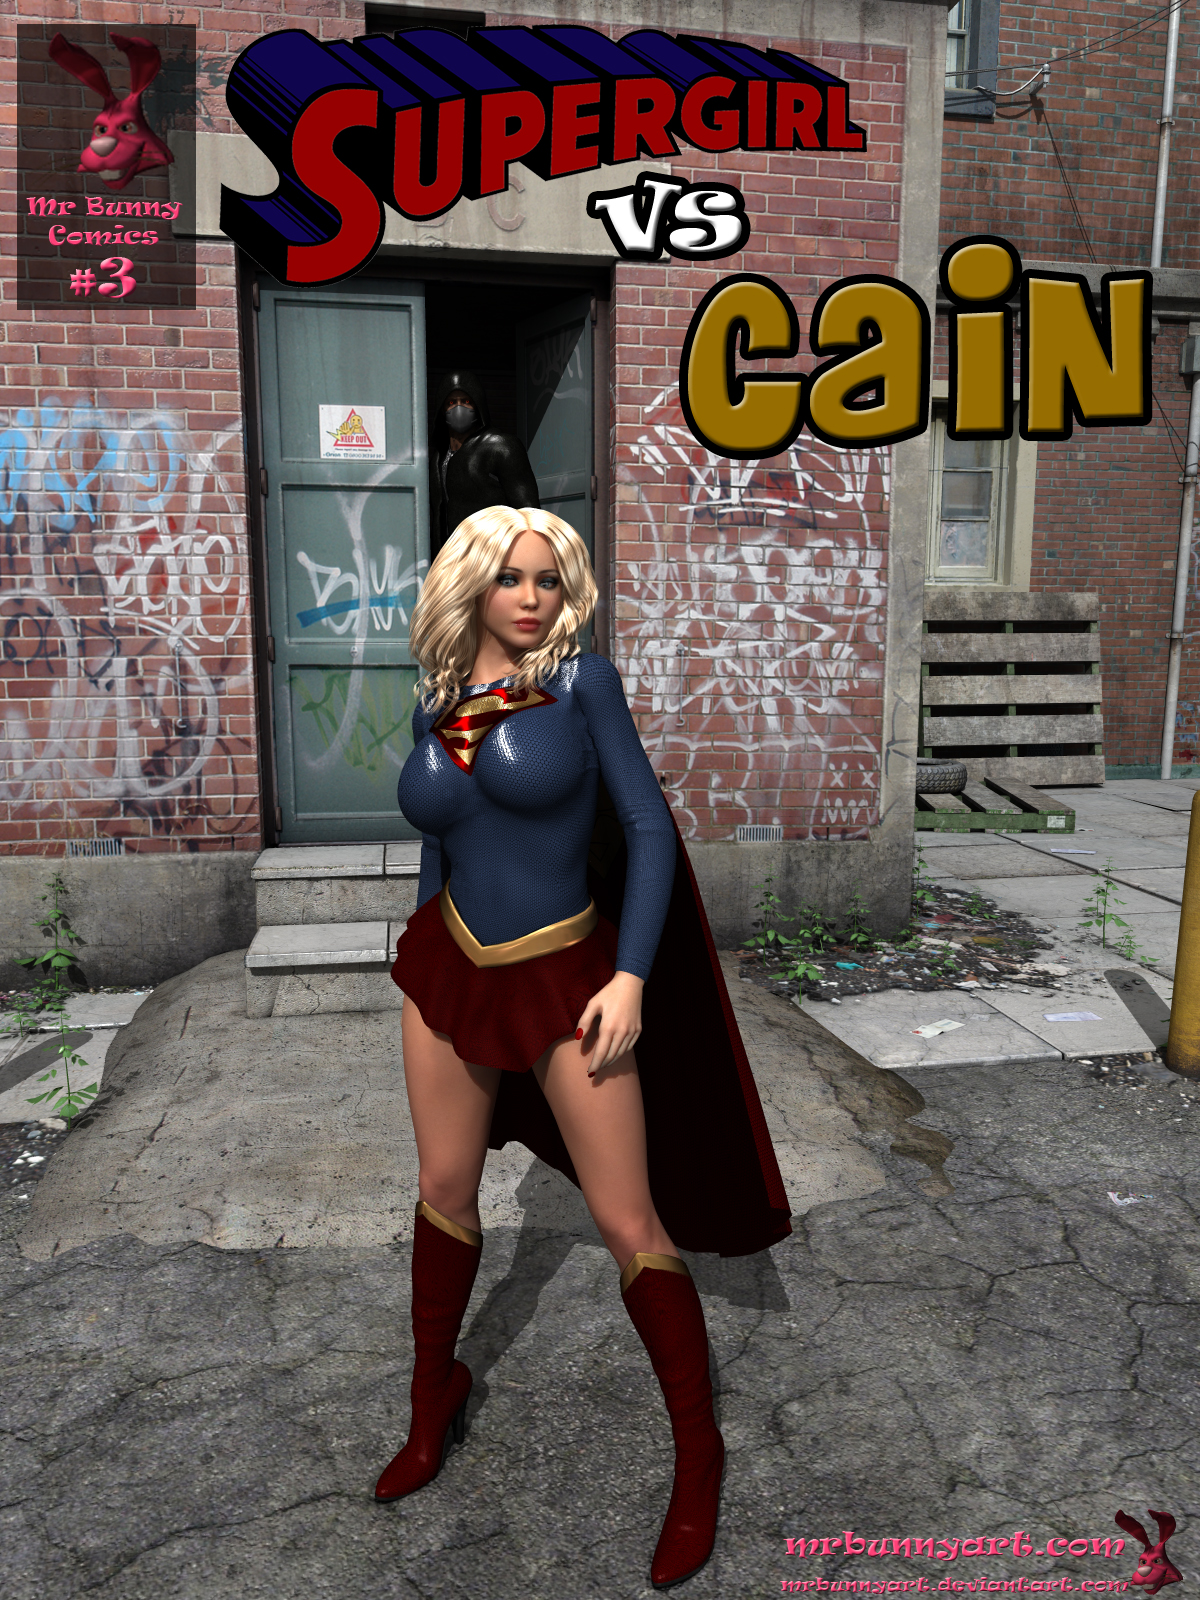 SureFap xxx porno Superman - [MrBunnyArt] - Comics #3 - Supergirl Vs Cain